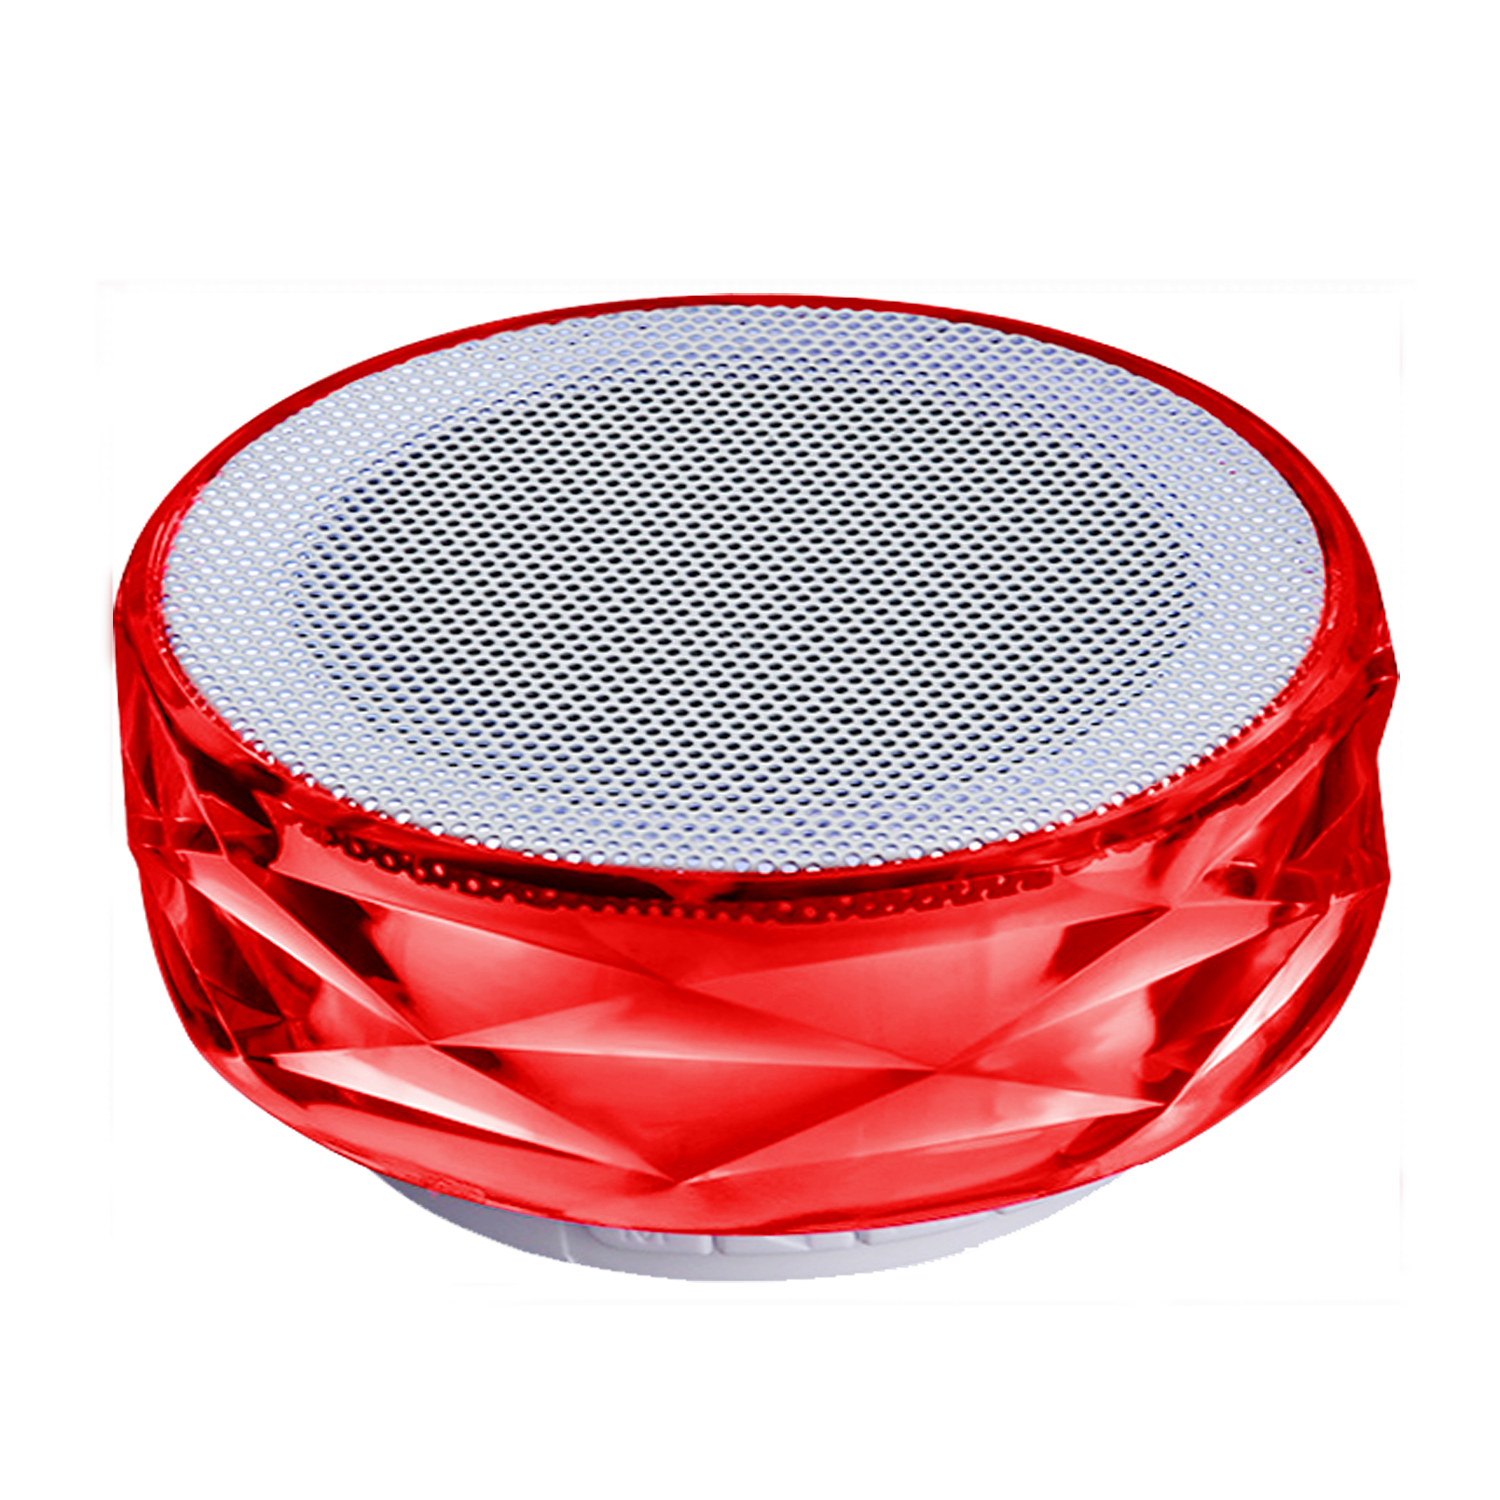 TechXtras Crystal Wireless Speaker - Red